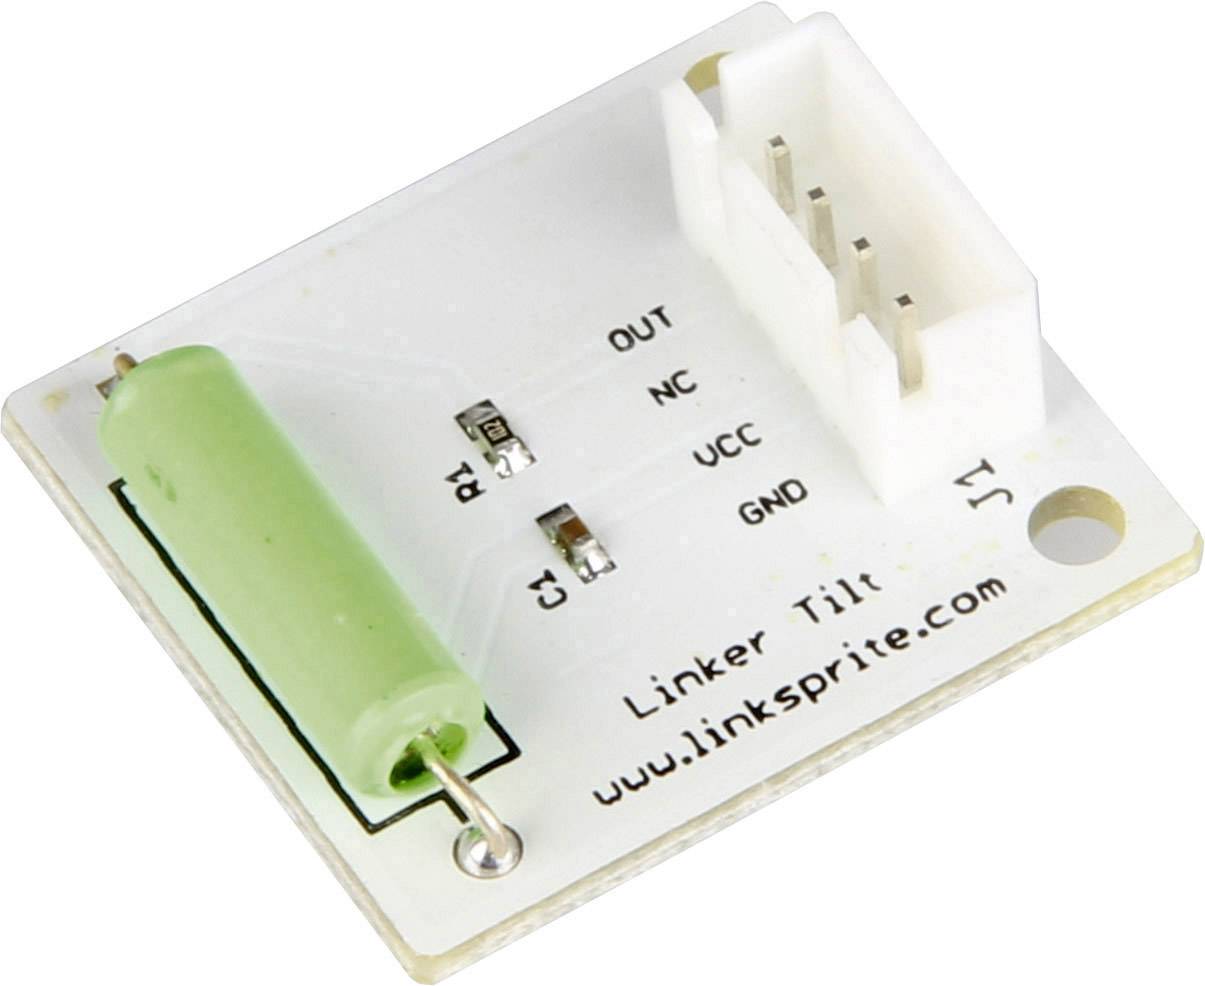 JOY-IT Linker Kit Mini Platine mit Tiltsensor